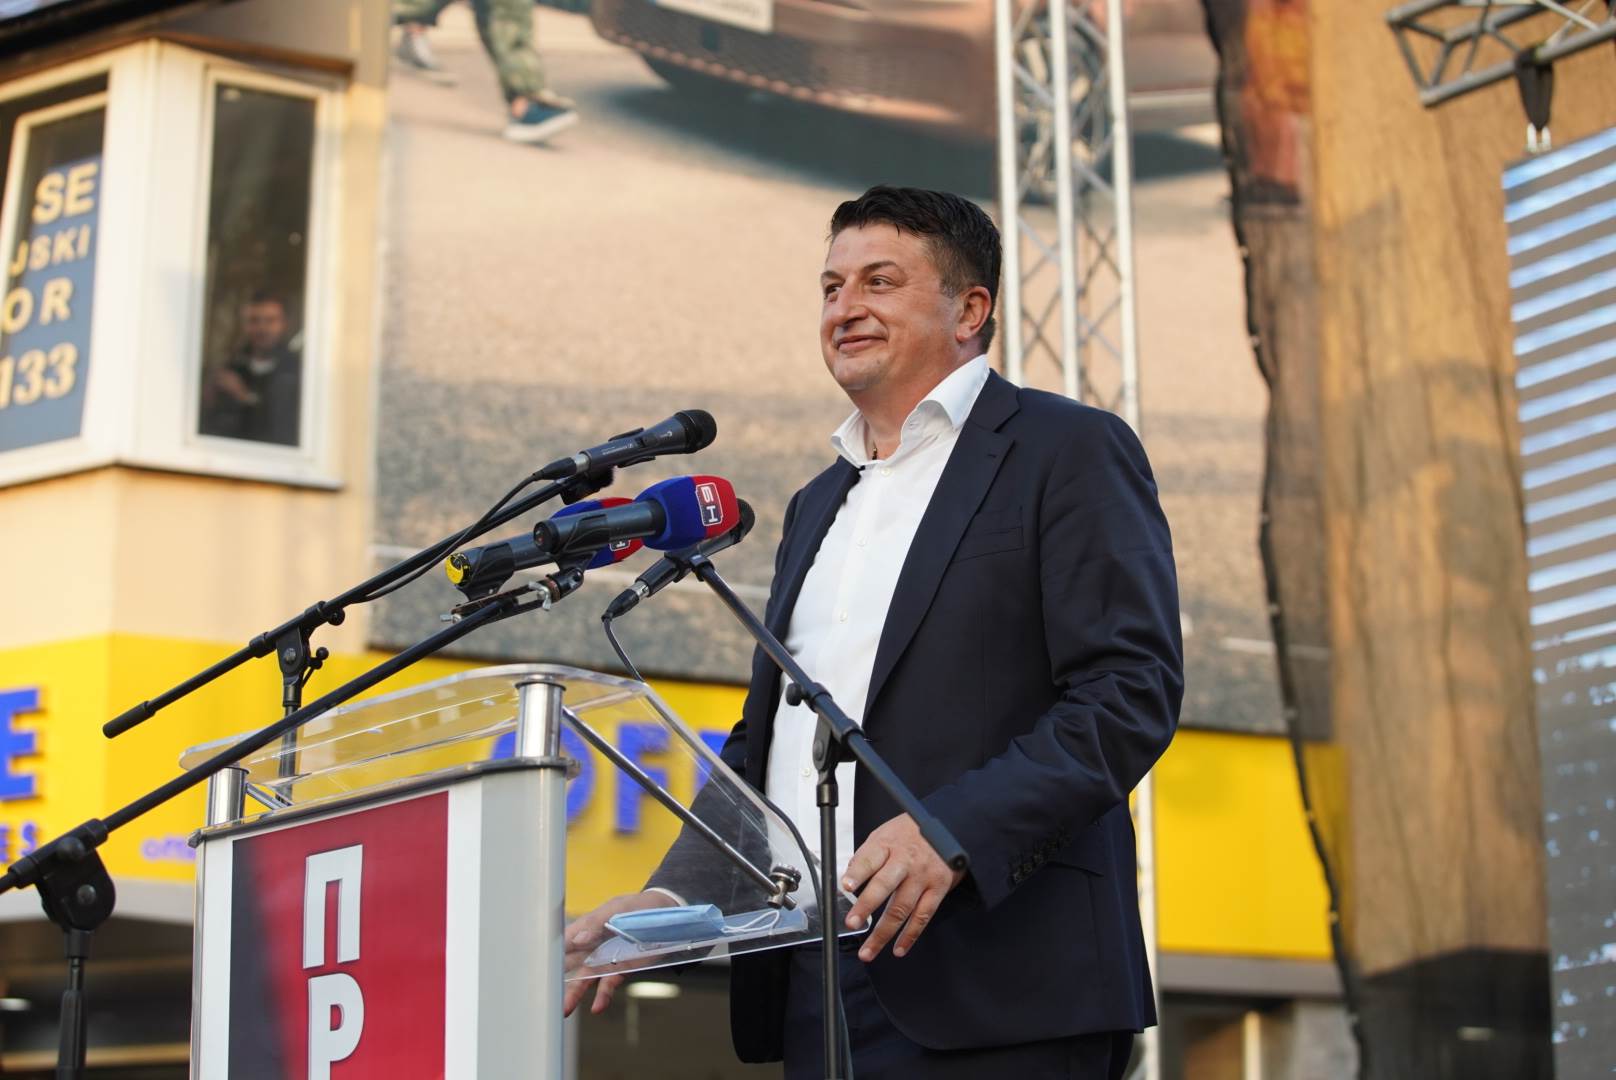  Milan Radović o kandidaturi SDS 